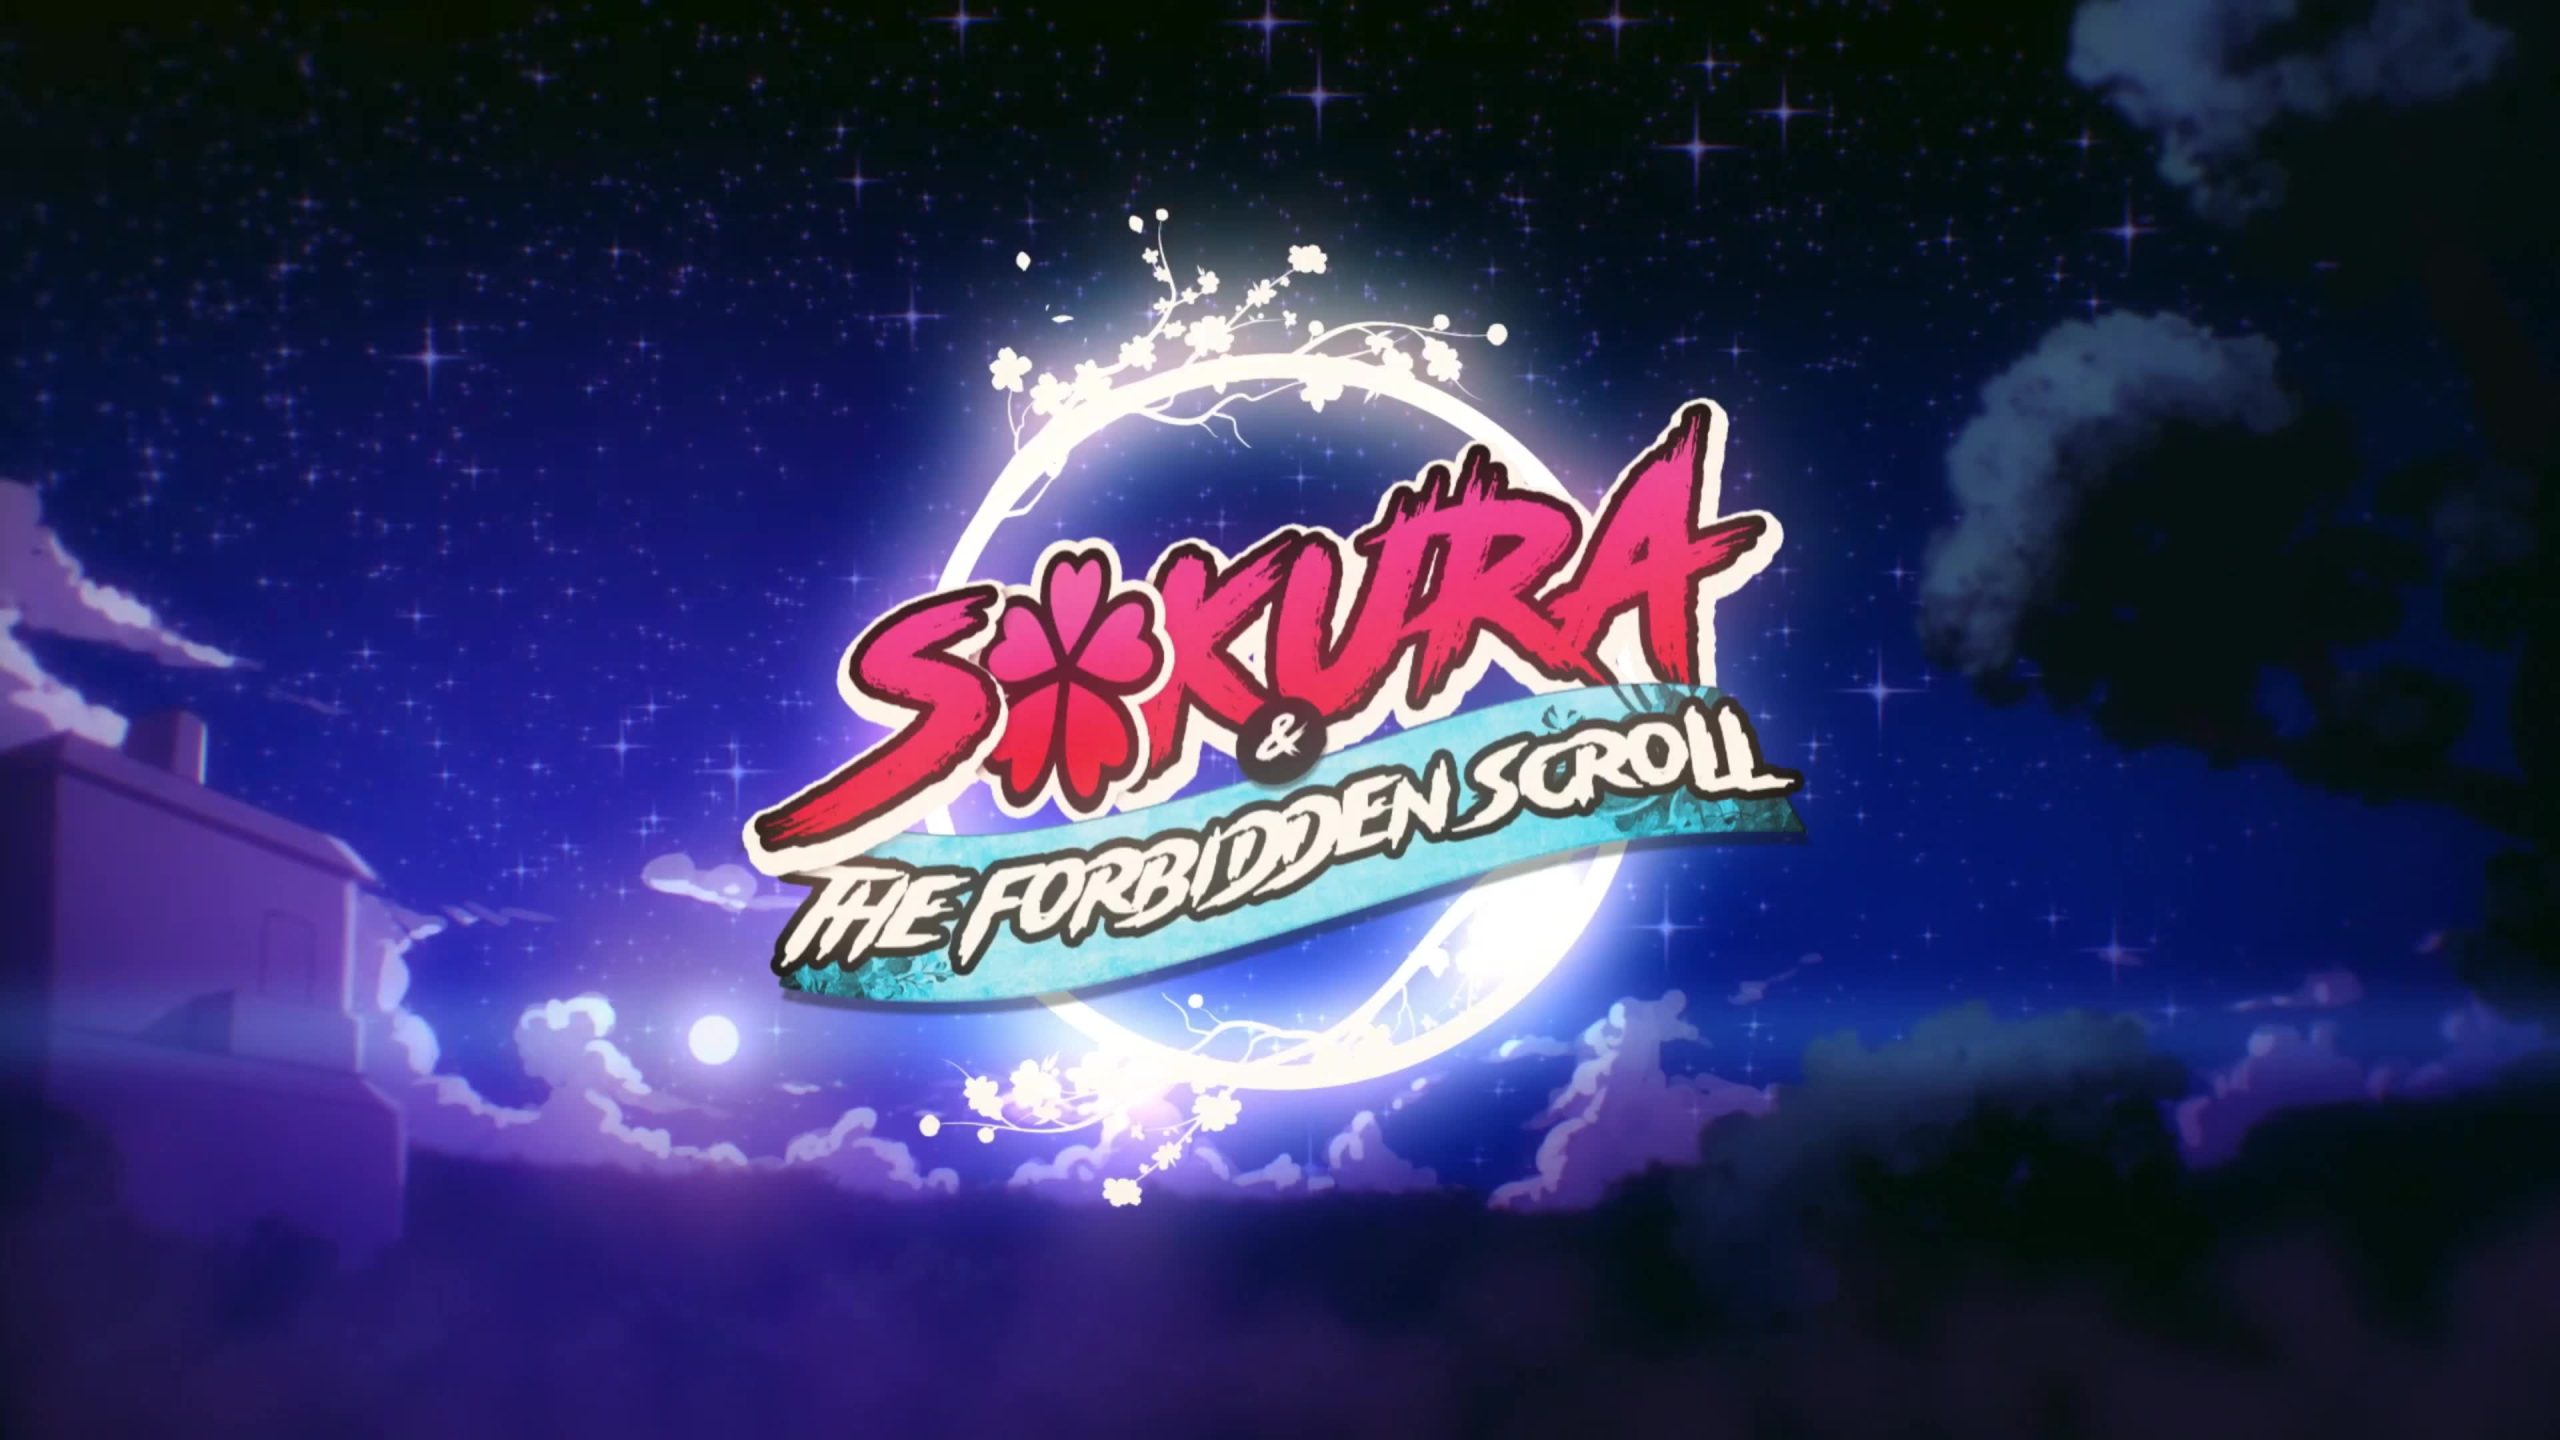 Sakura-the-forb idden-scroll-d-art